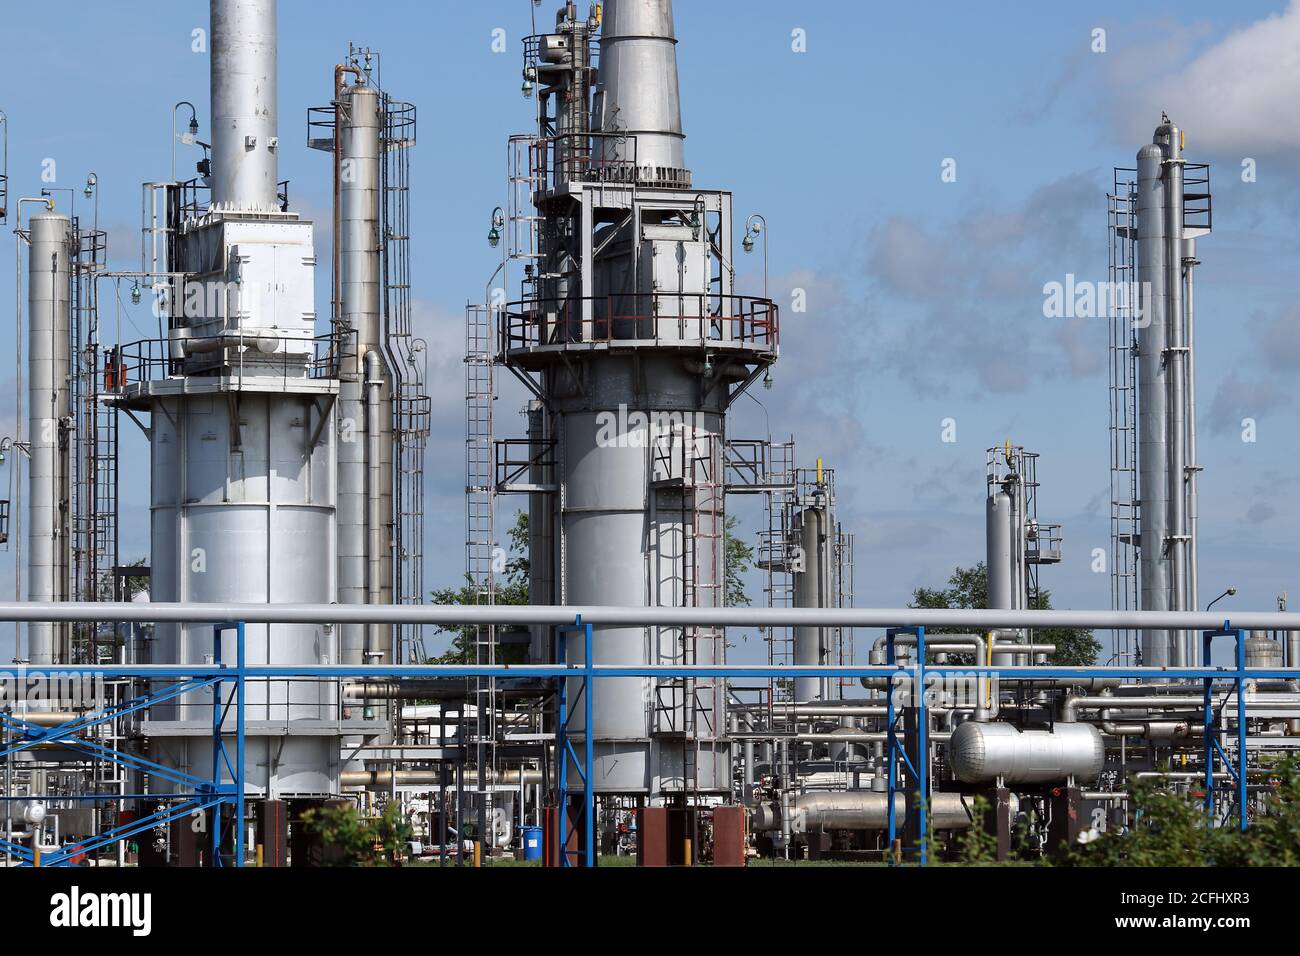 raffinerie de pétrole, oléoduc, usine pétrochimique, pipelines et industrie lourde de cheminées Banque D'Images